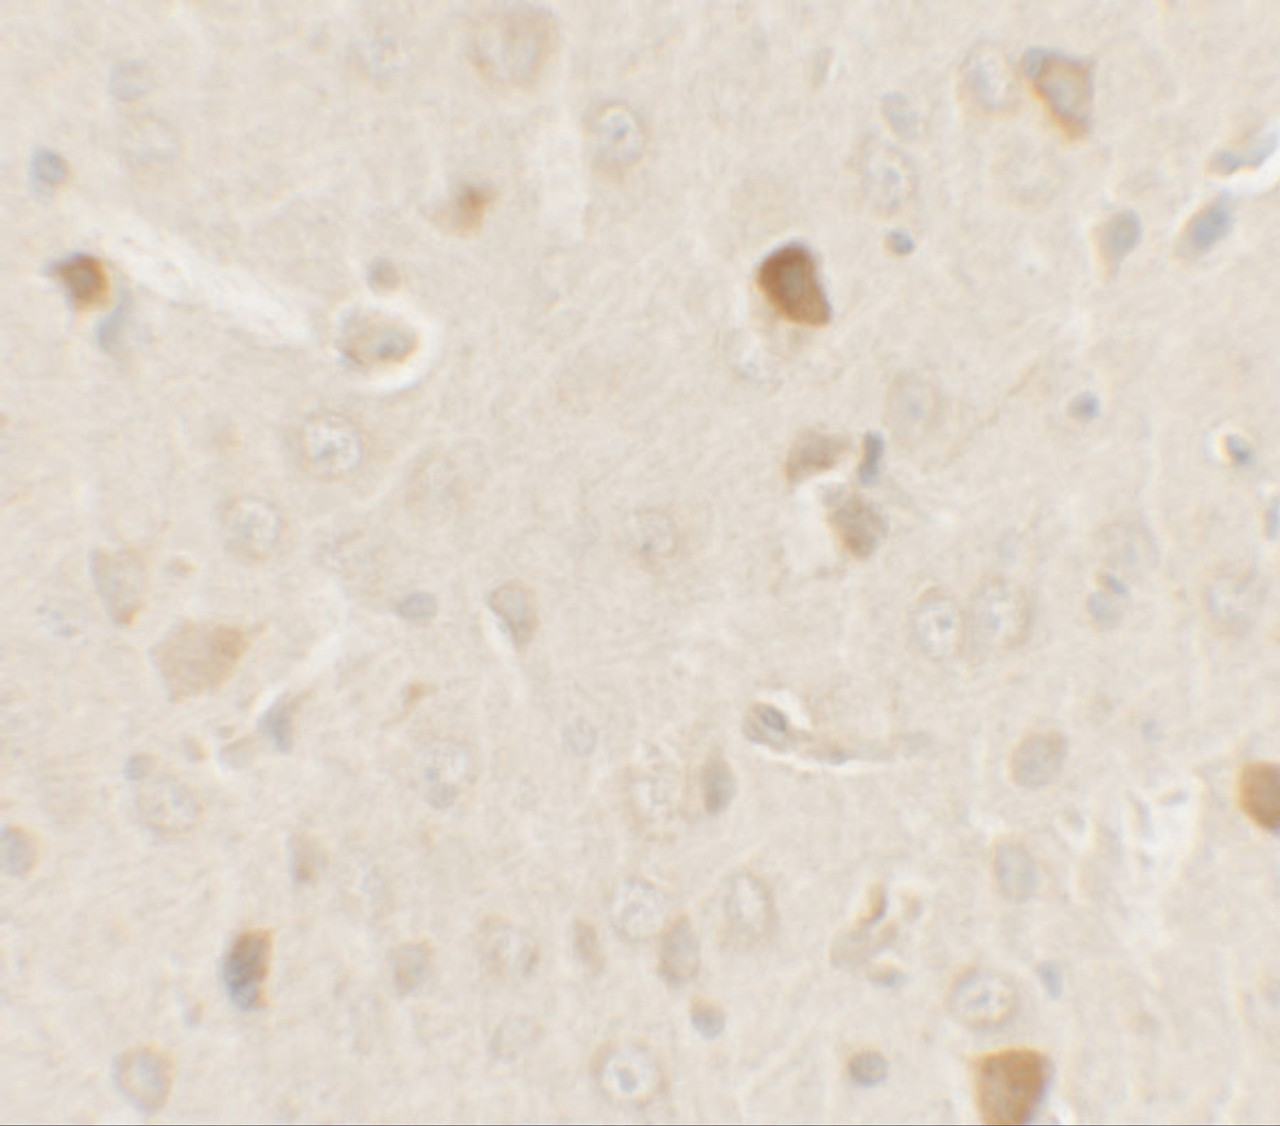 Immunohistochemistry of AKT1S1 in rat brain tissue with AKT1S1 antibody at 2.5 ug/ml.